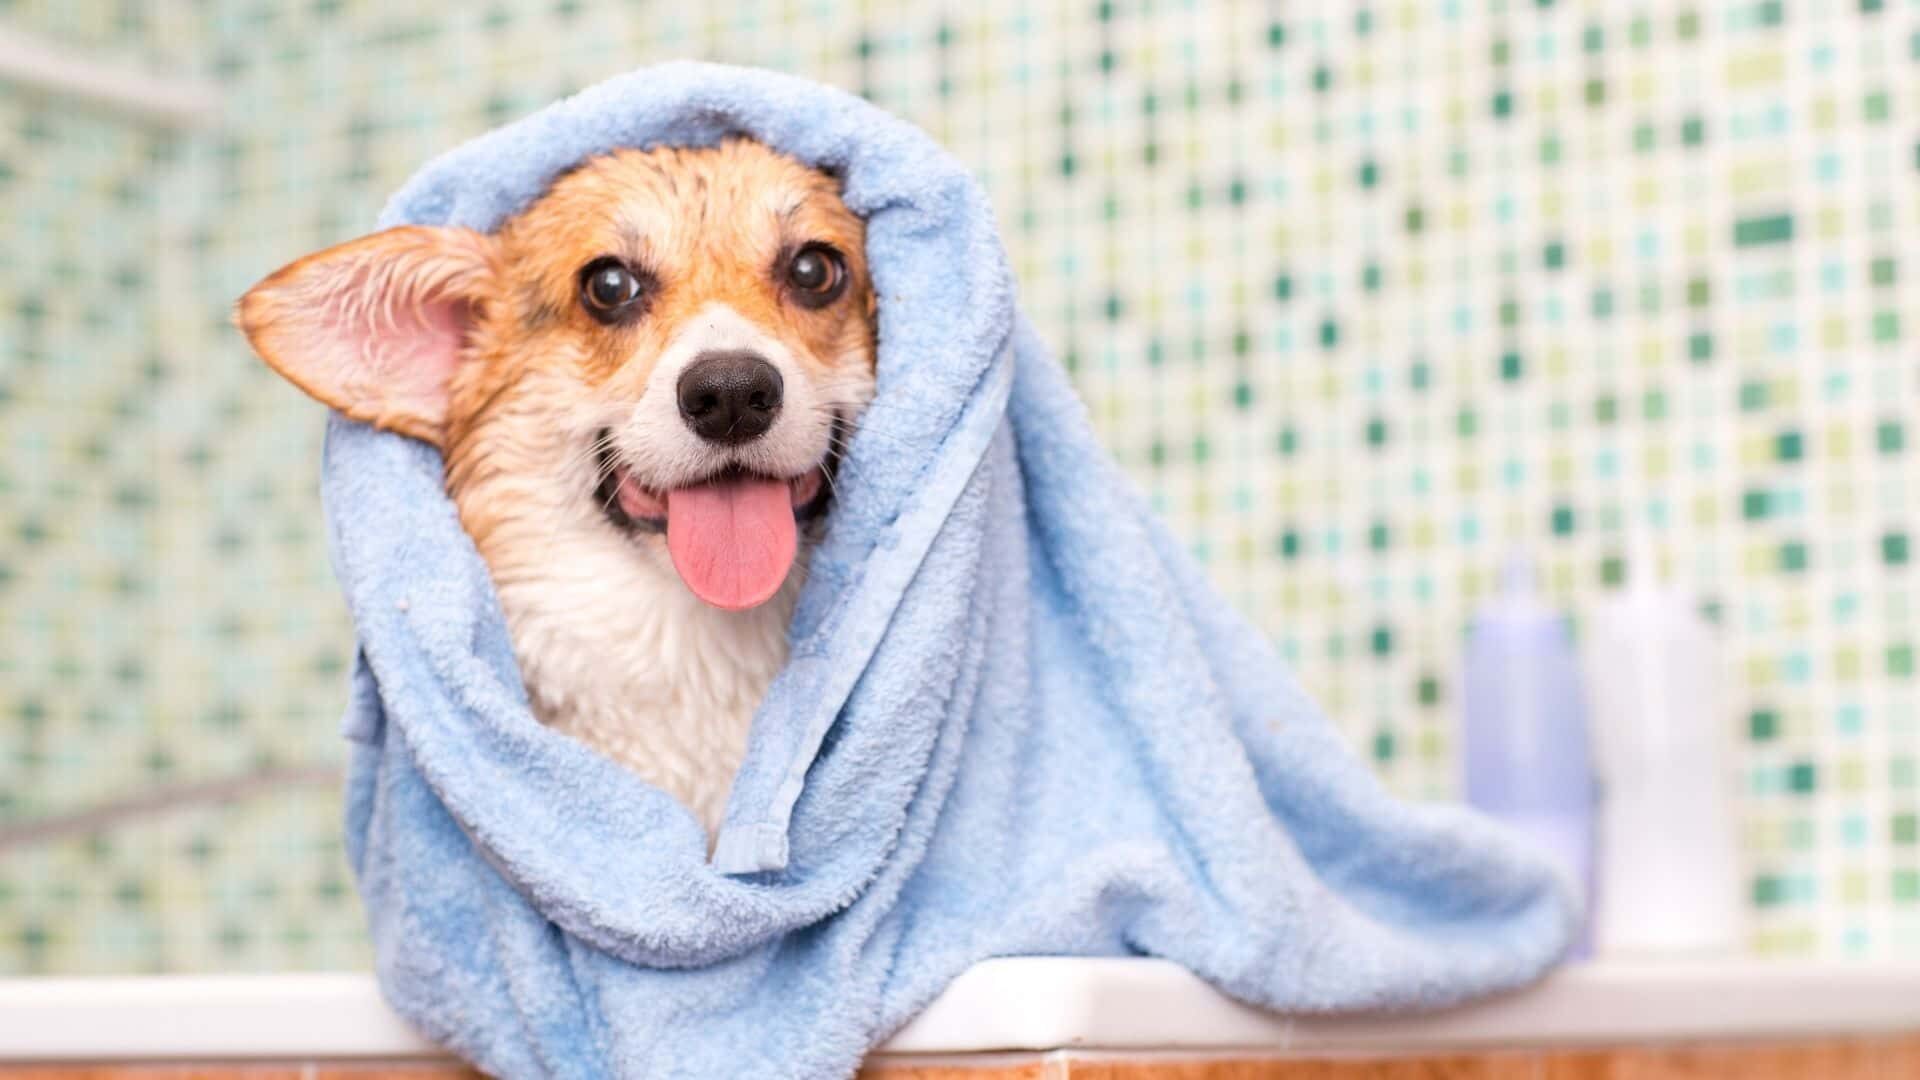 Freshen up dog without bath: